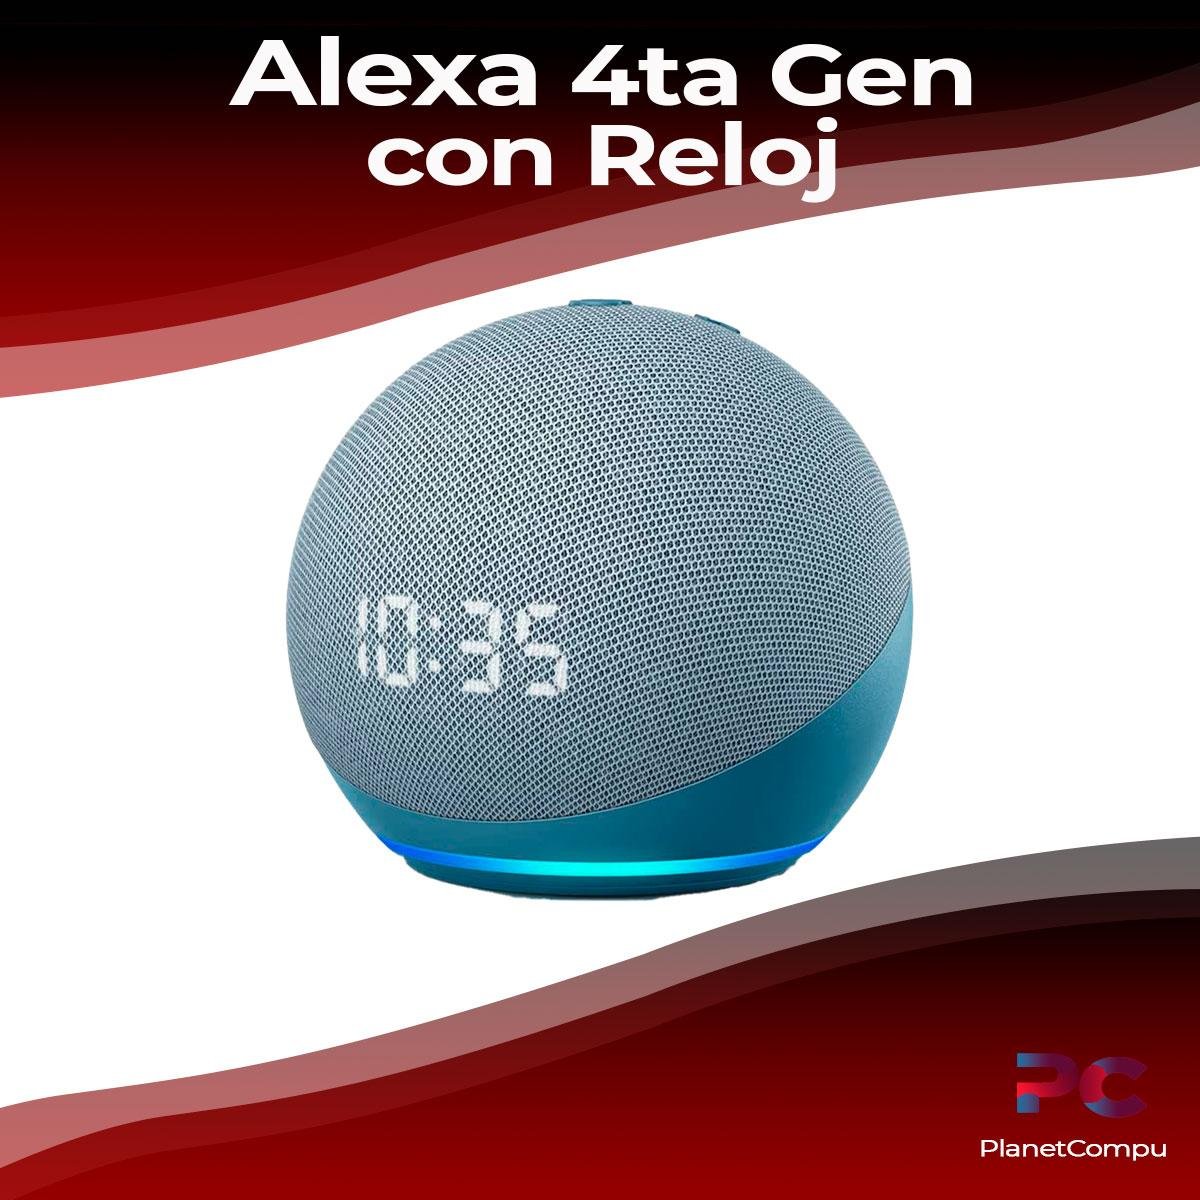 Alexa Echo Dot 4ta generación con reloj – PlanetCompu